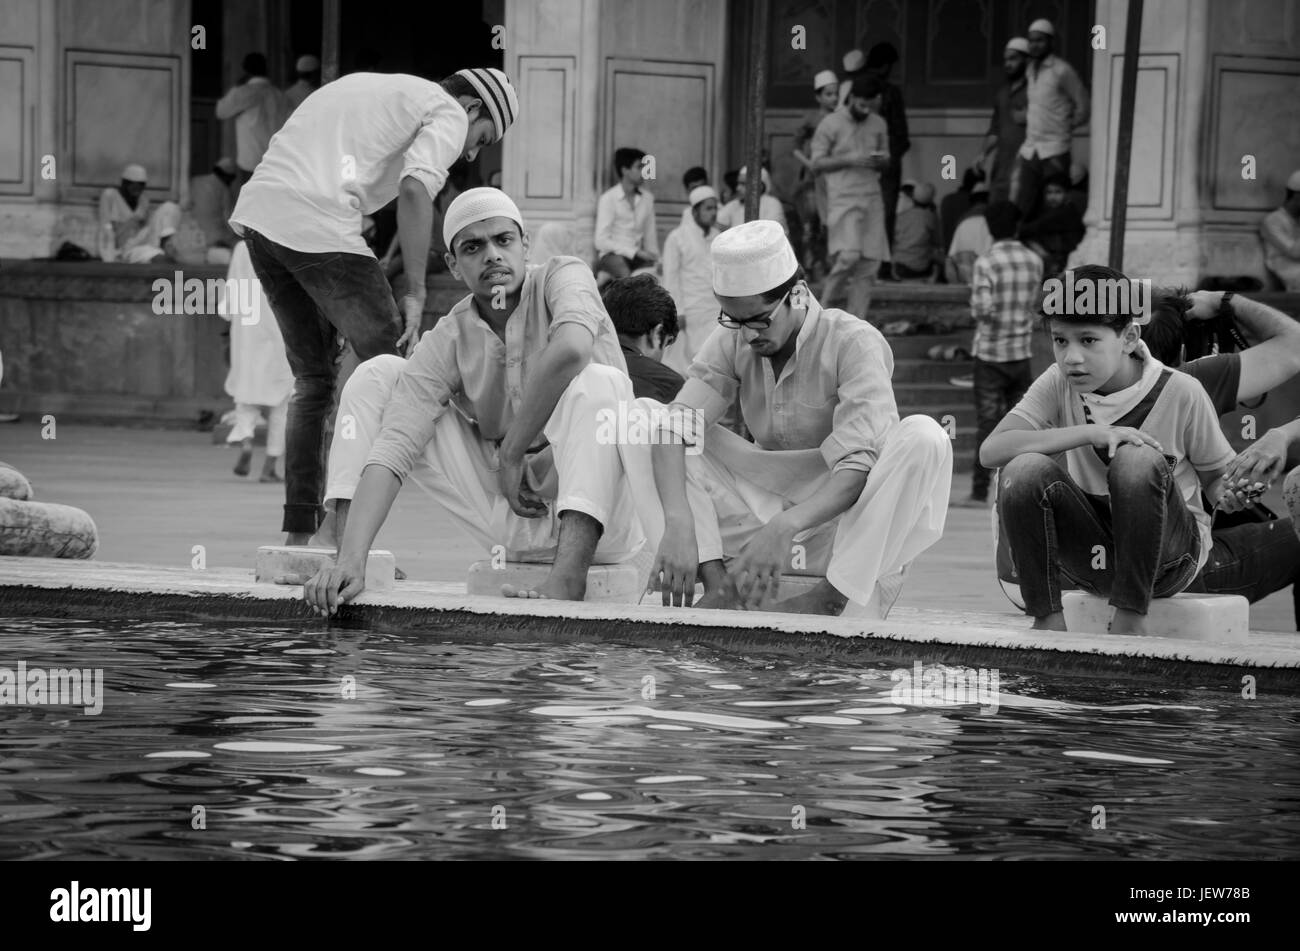 Eid Mubarak Black and White Stock Photos & Images - Alamy